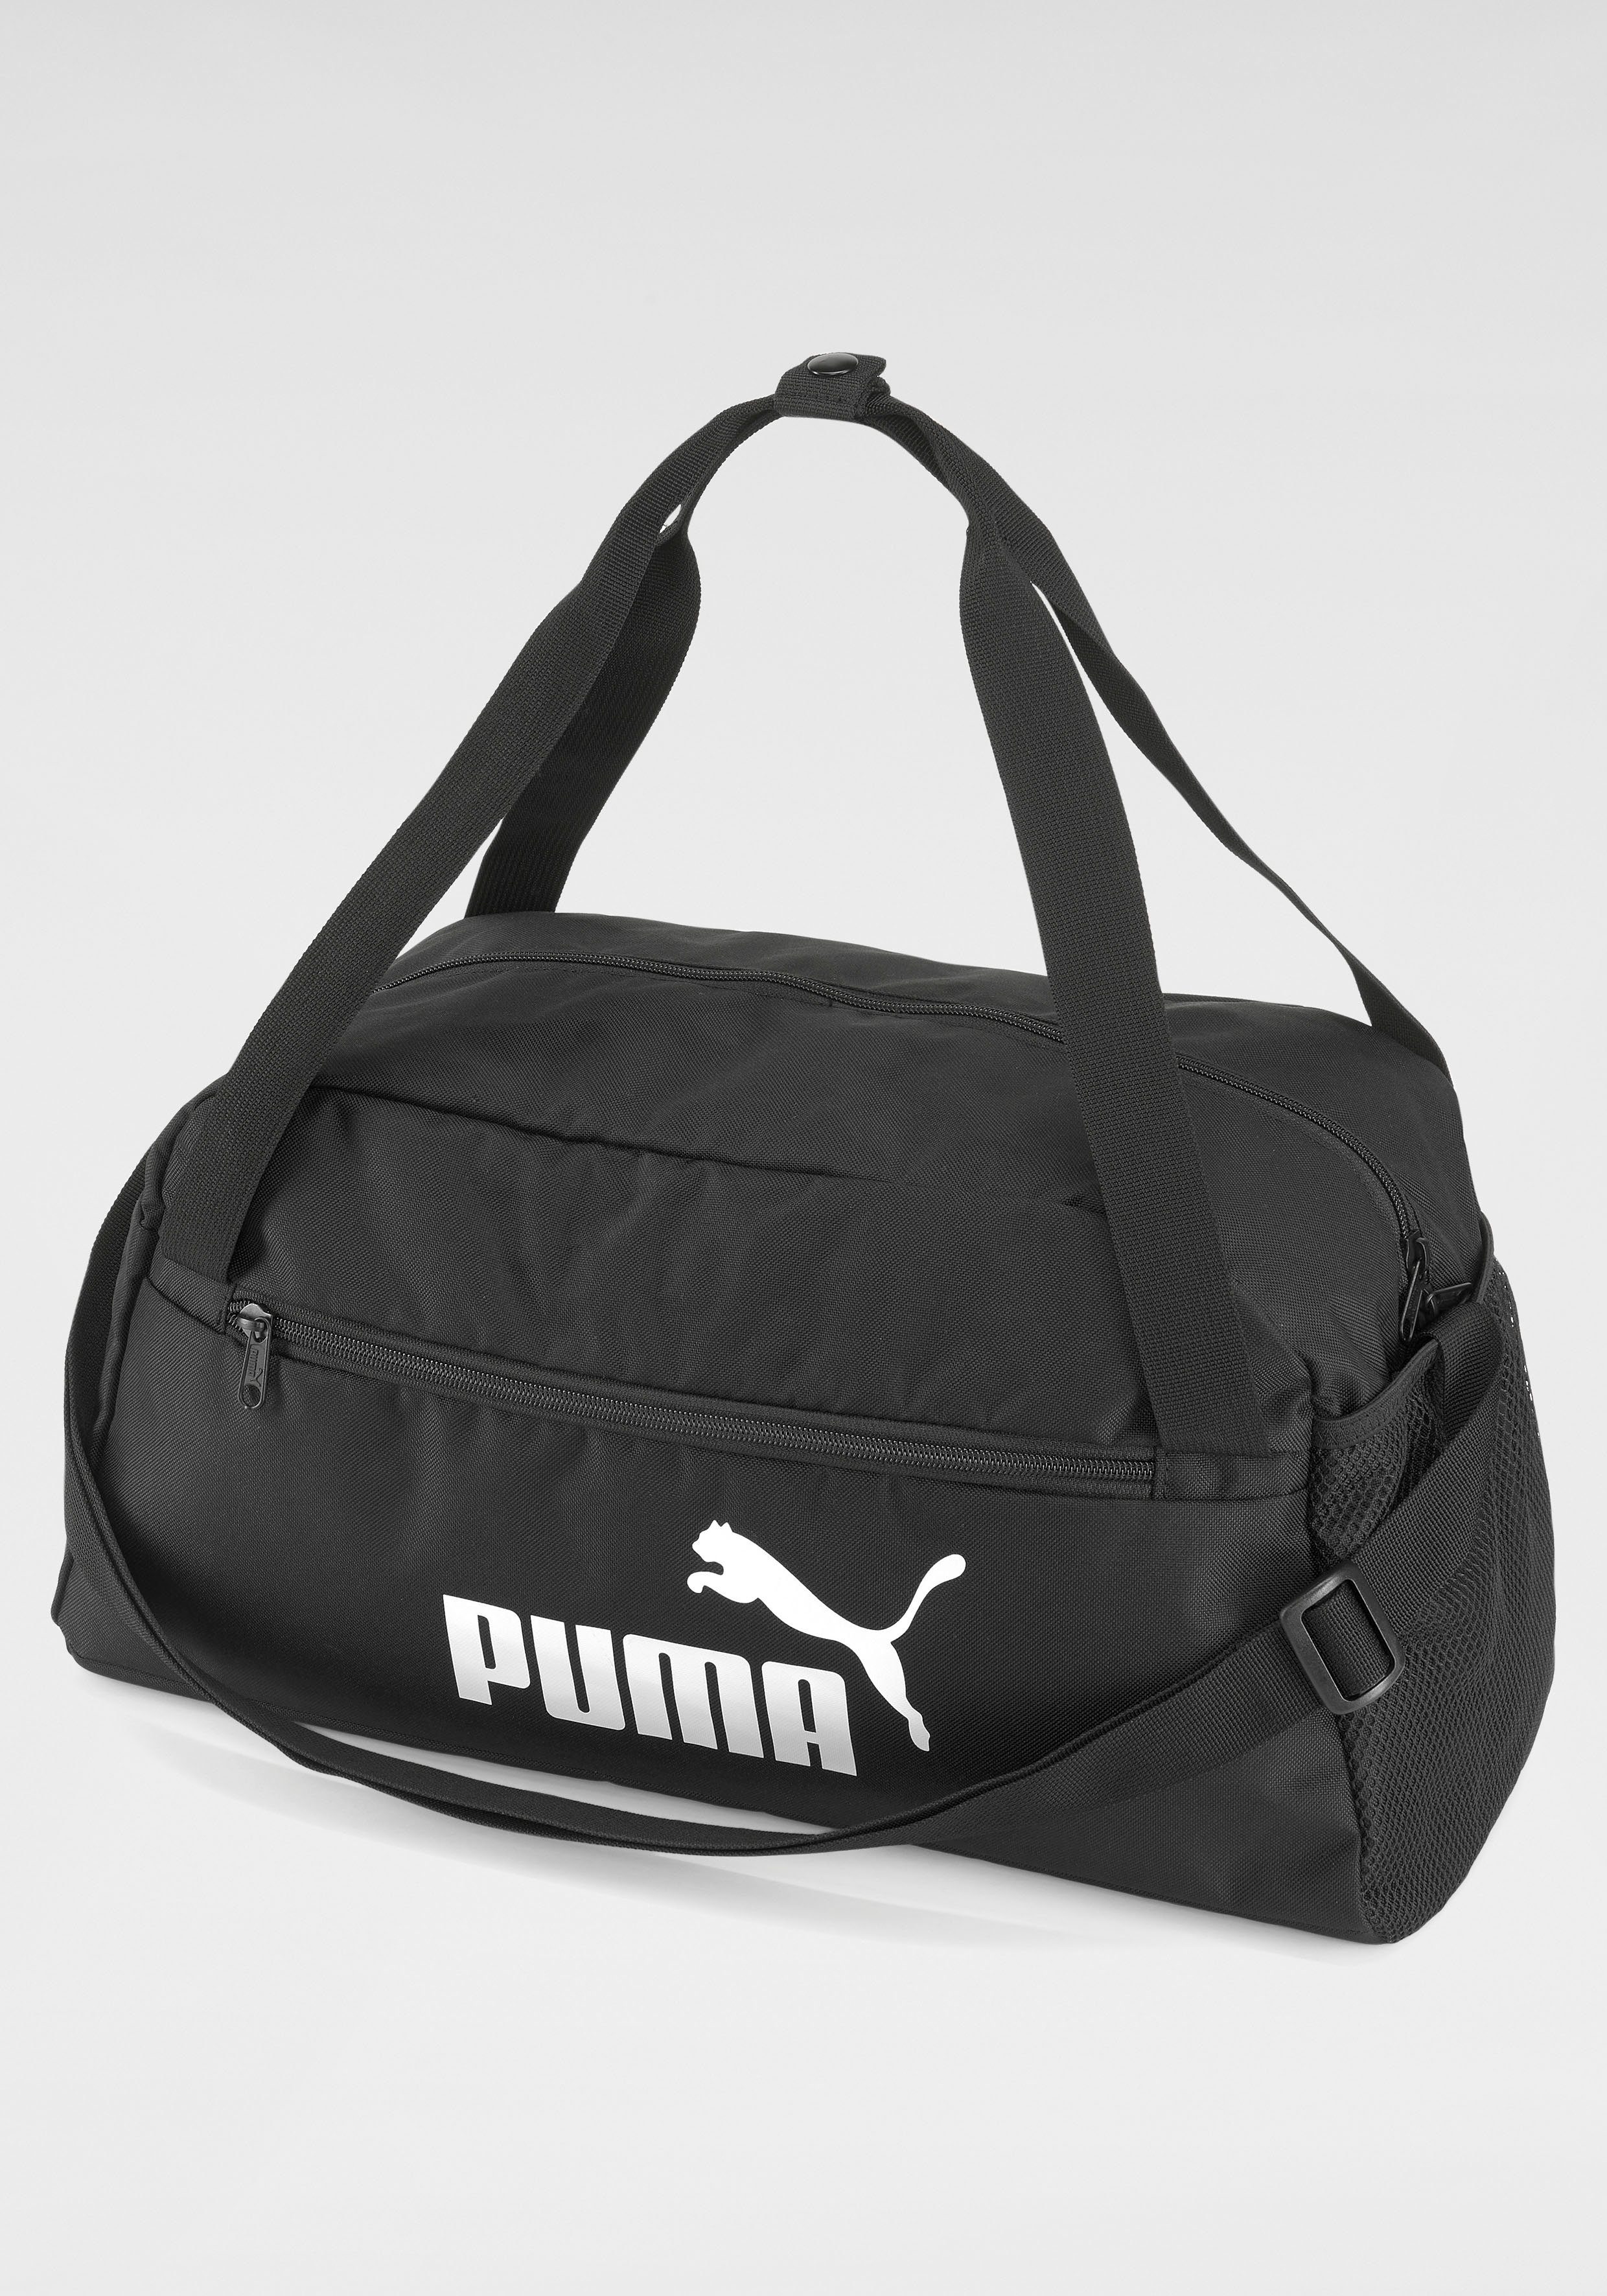 PUMA Sporttasche »PUMA Phase Sports Bag« online kaufen | OTTO